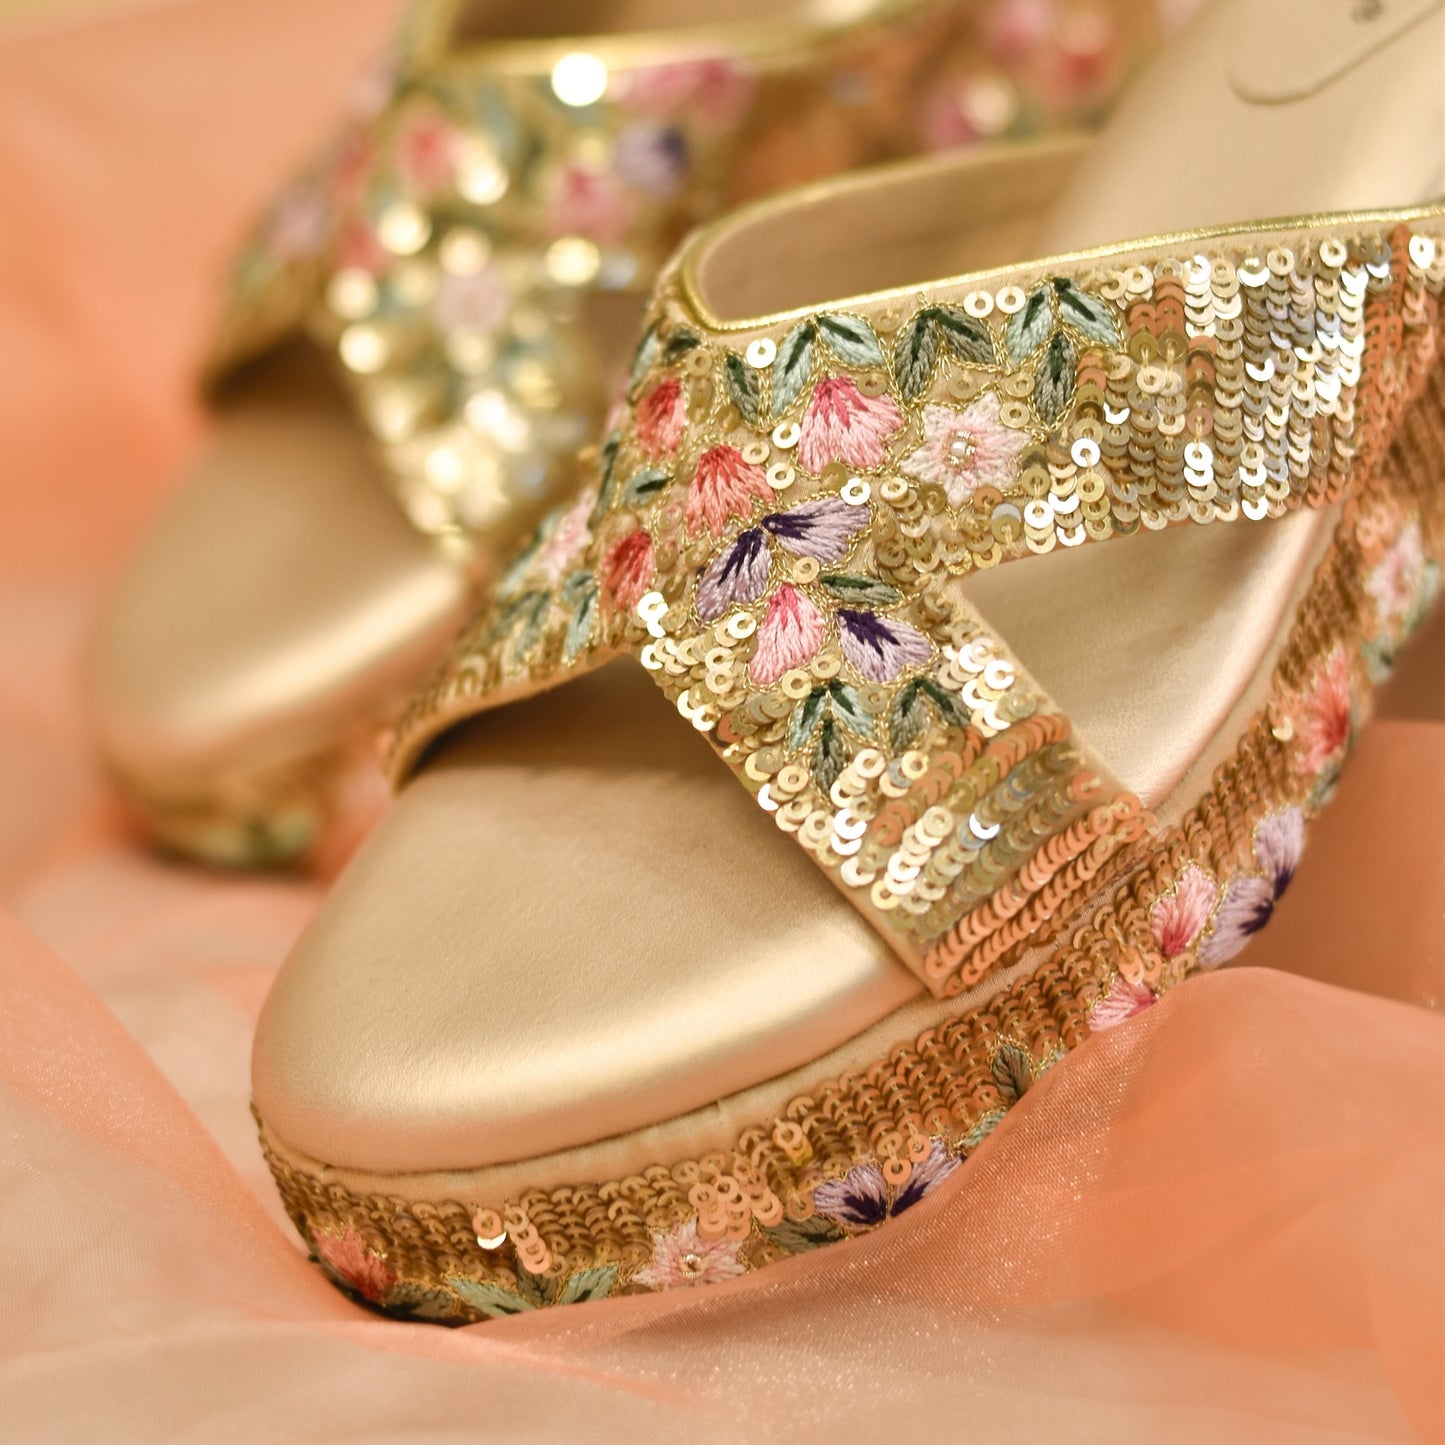 Golden embellished high heels for weddings and festivals